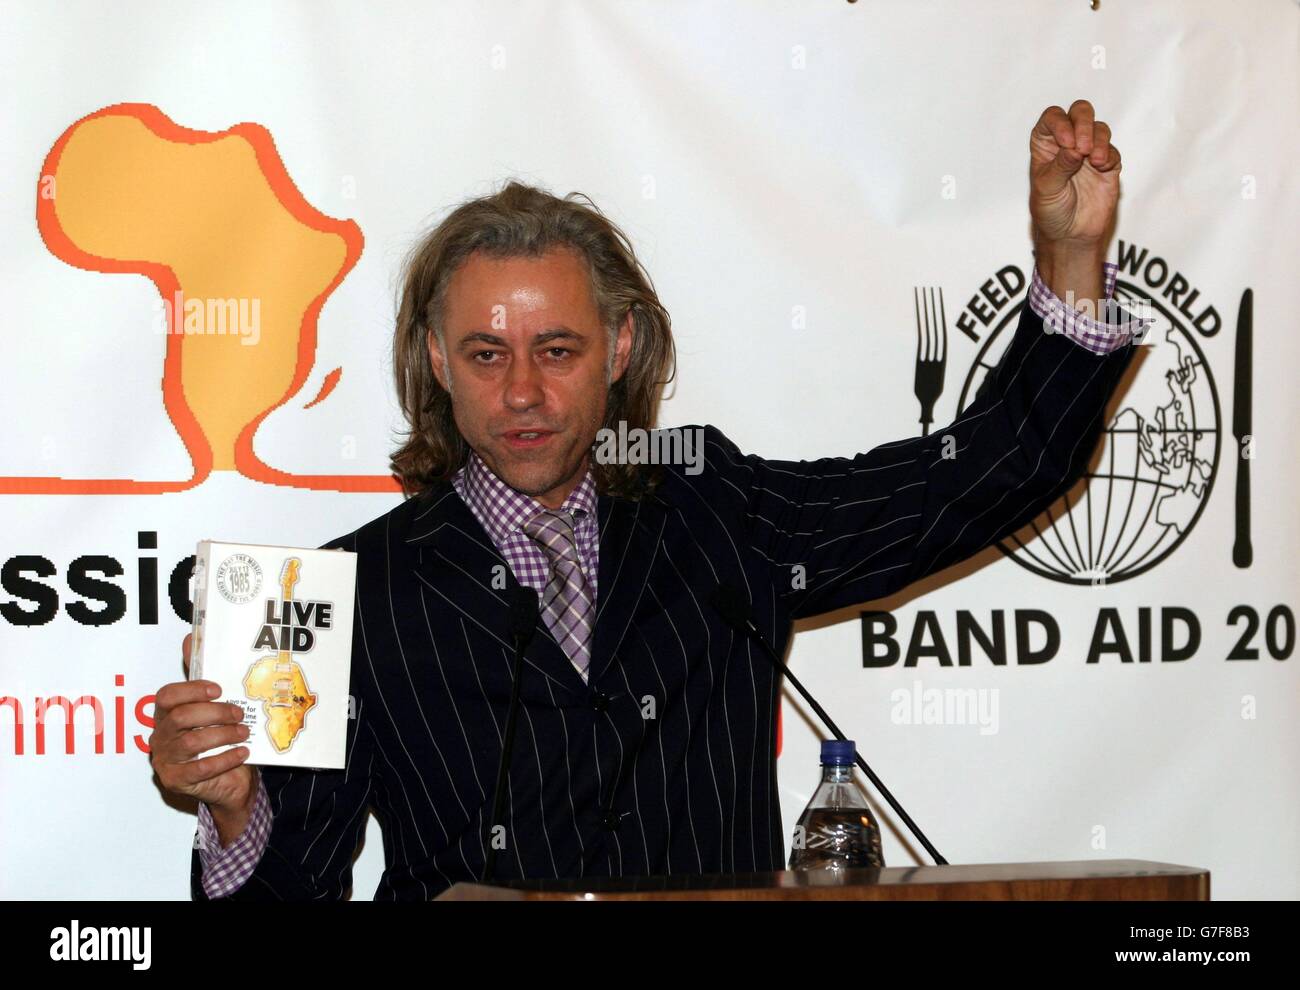 Bob Geldof à New York pour promouvoir le DVD Live Aid. Son apparition a suivi la diffusion en Grande-Bretagne du nouveau single de charité Band Aid 20 pour recueillir de l'argent pour l'Afrique. Banque D'Images